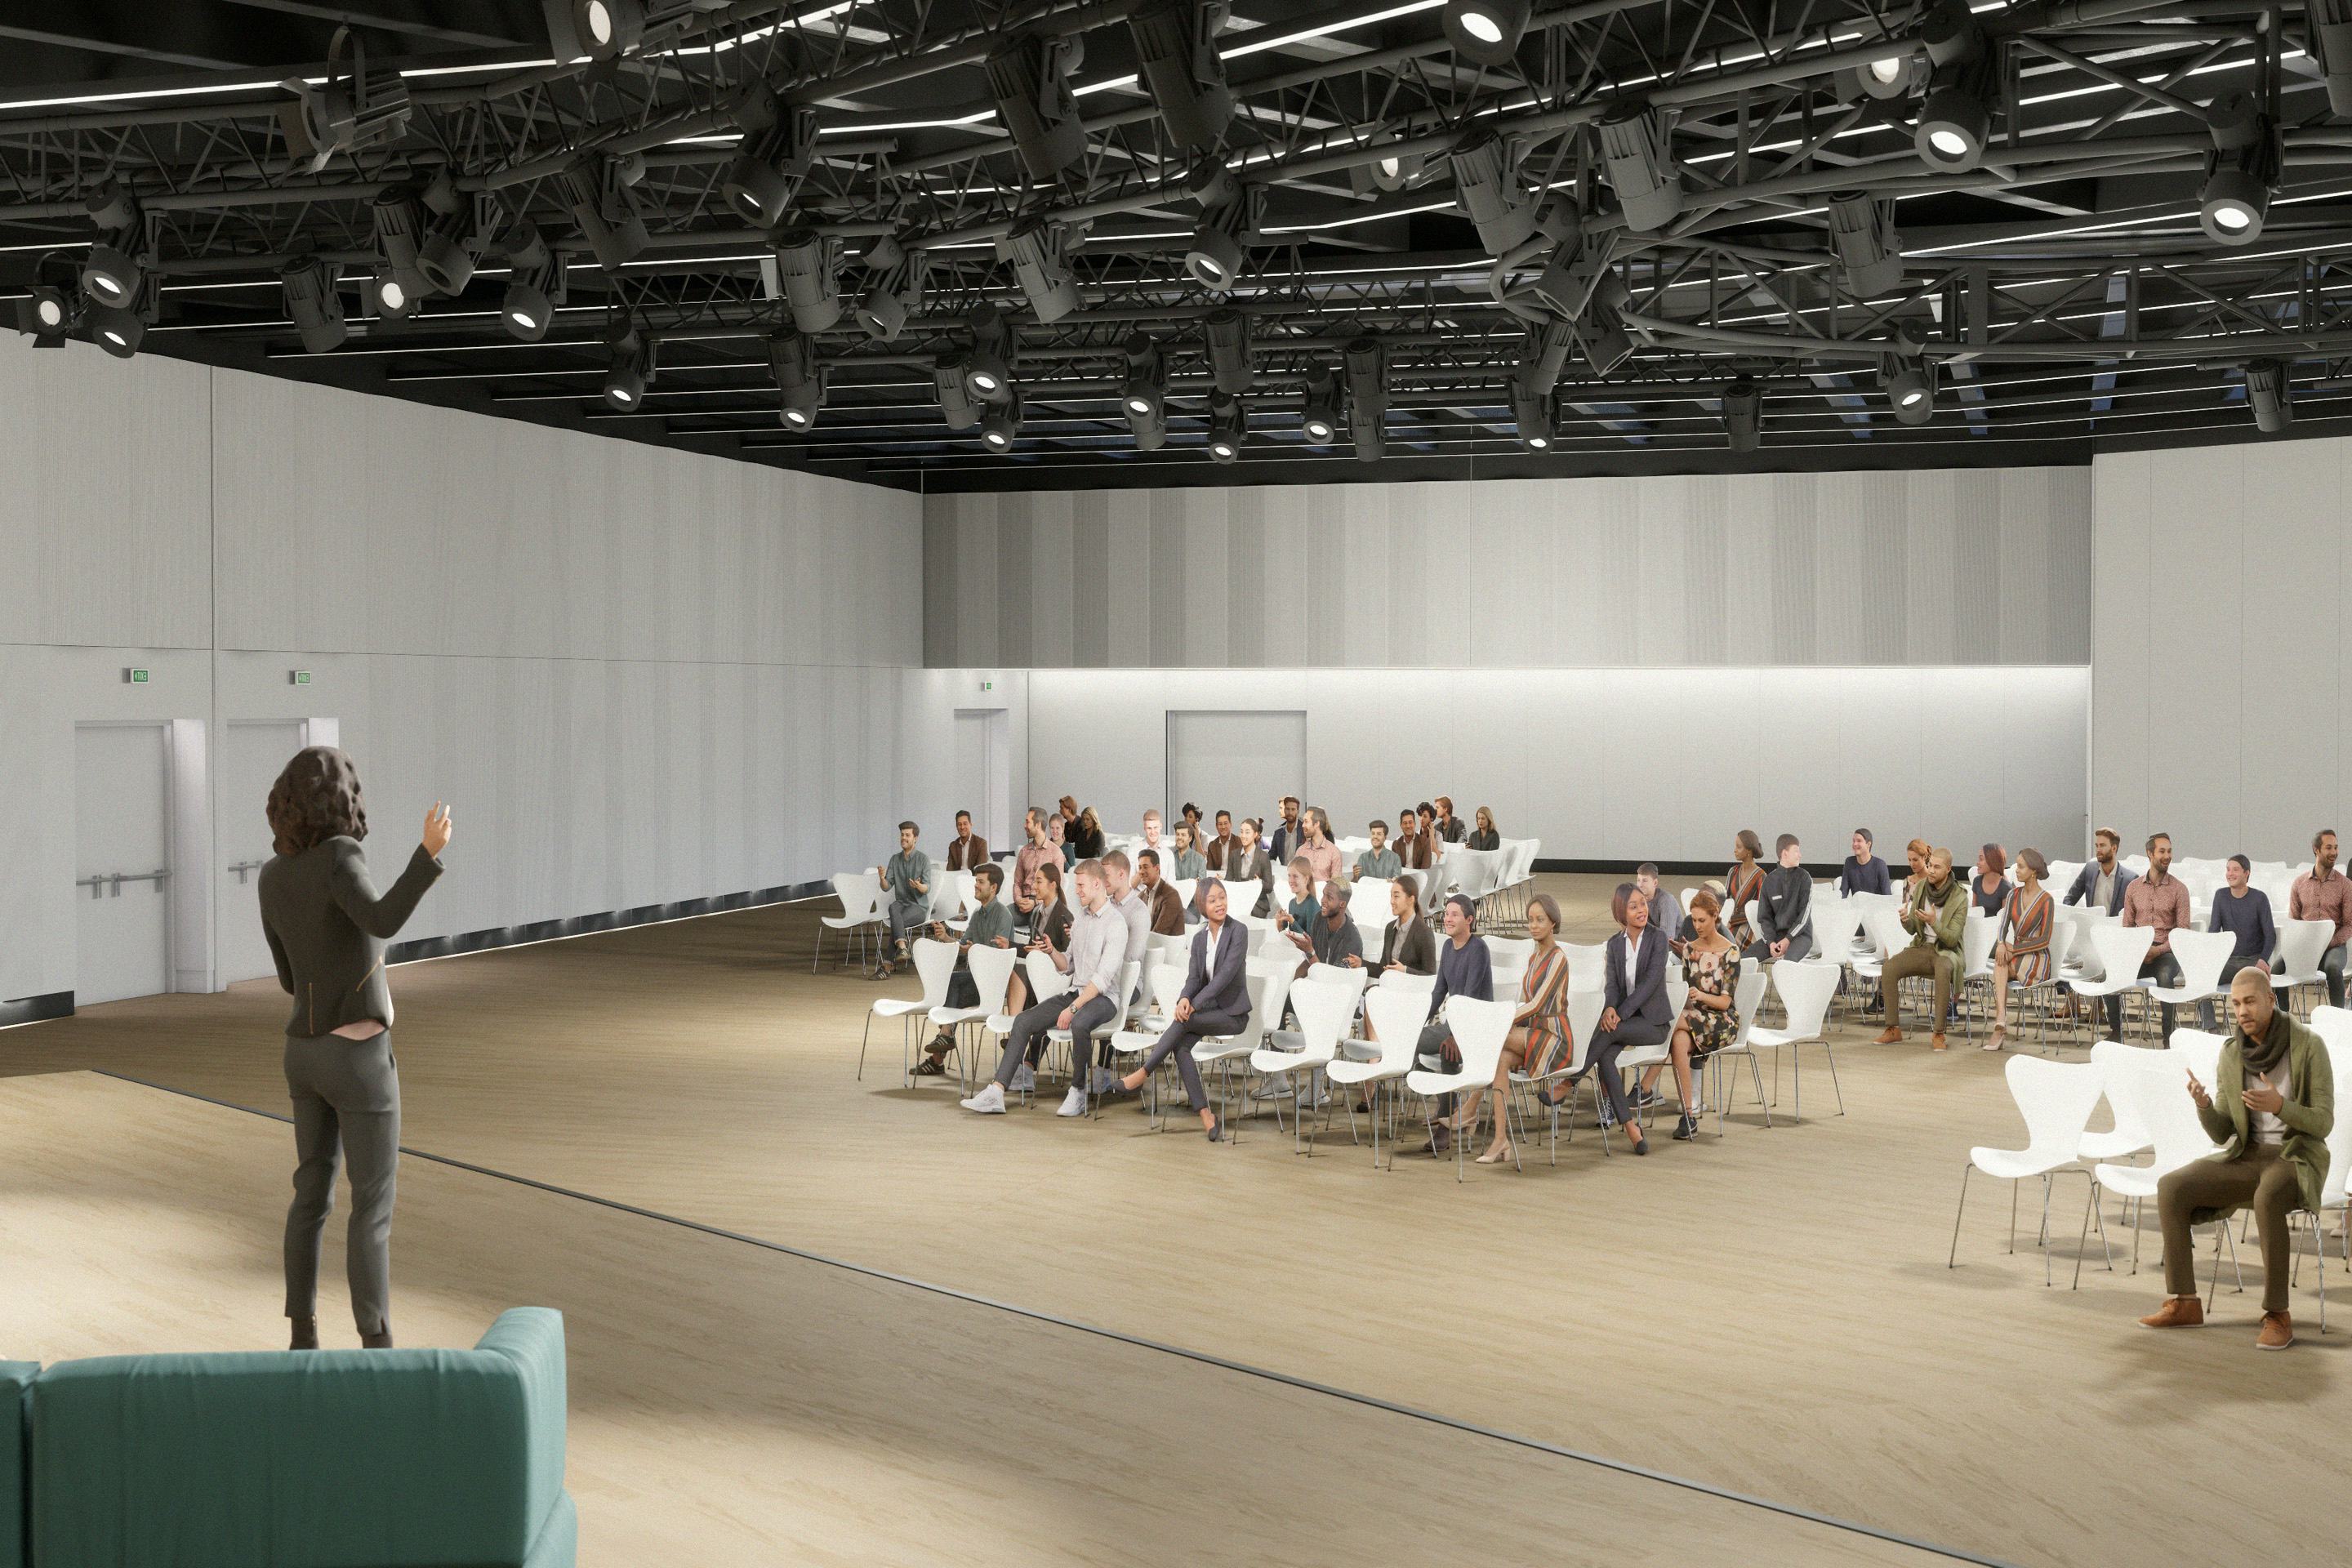 Rendering Bild zeigt Vortragsraum mit dunkler Decke, Leinwand mit Buehne, Sitzreihen sowie Vortragende und Gaeste